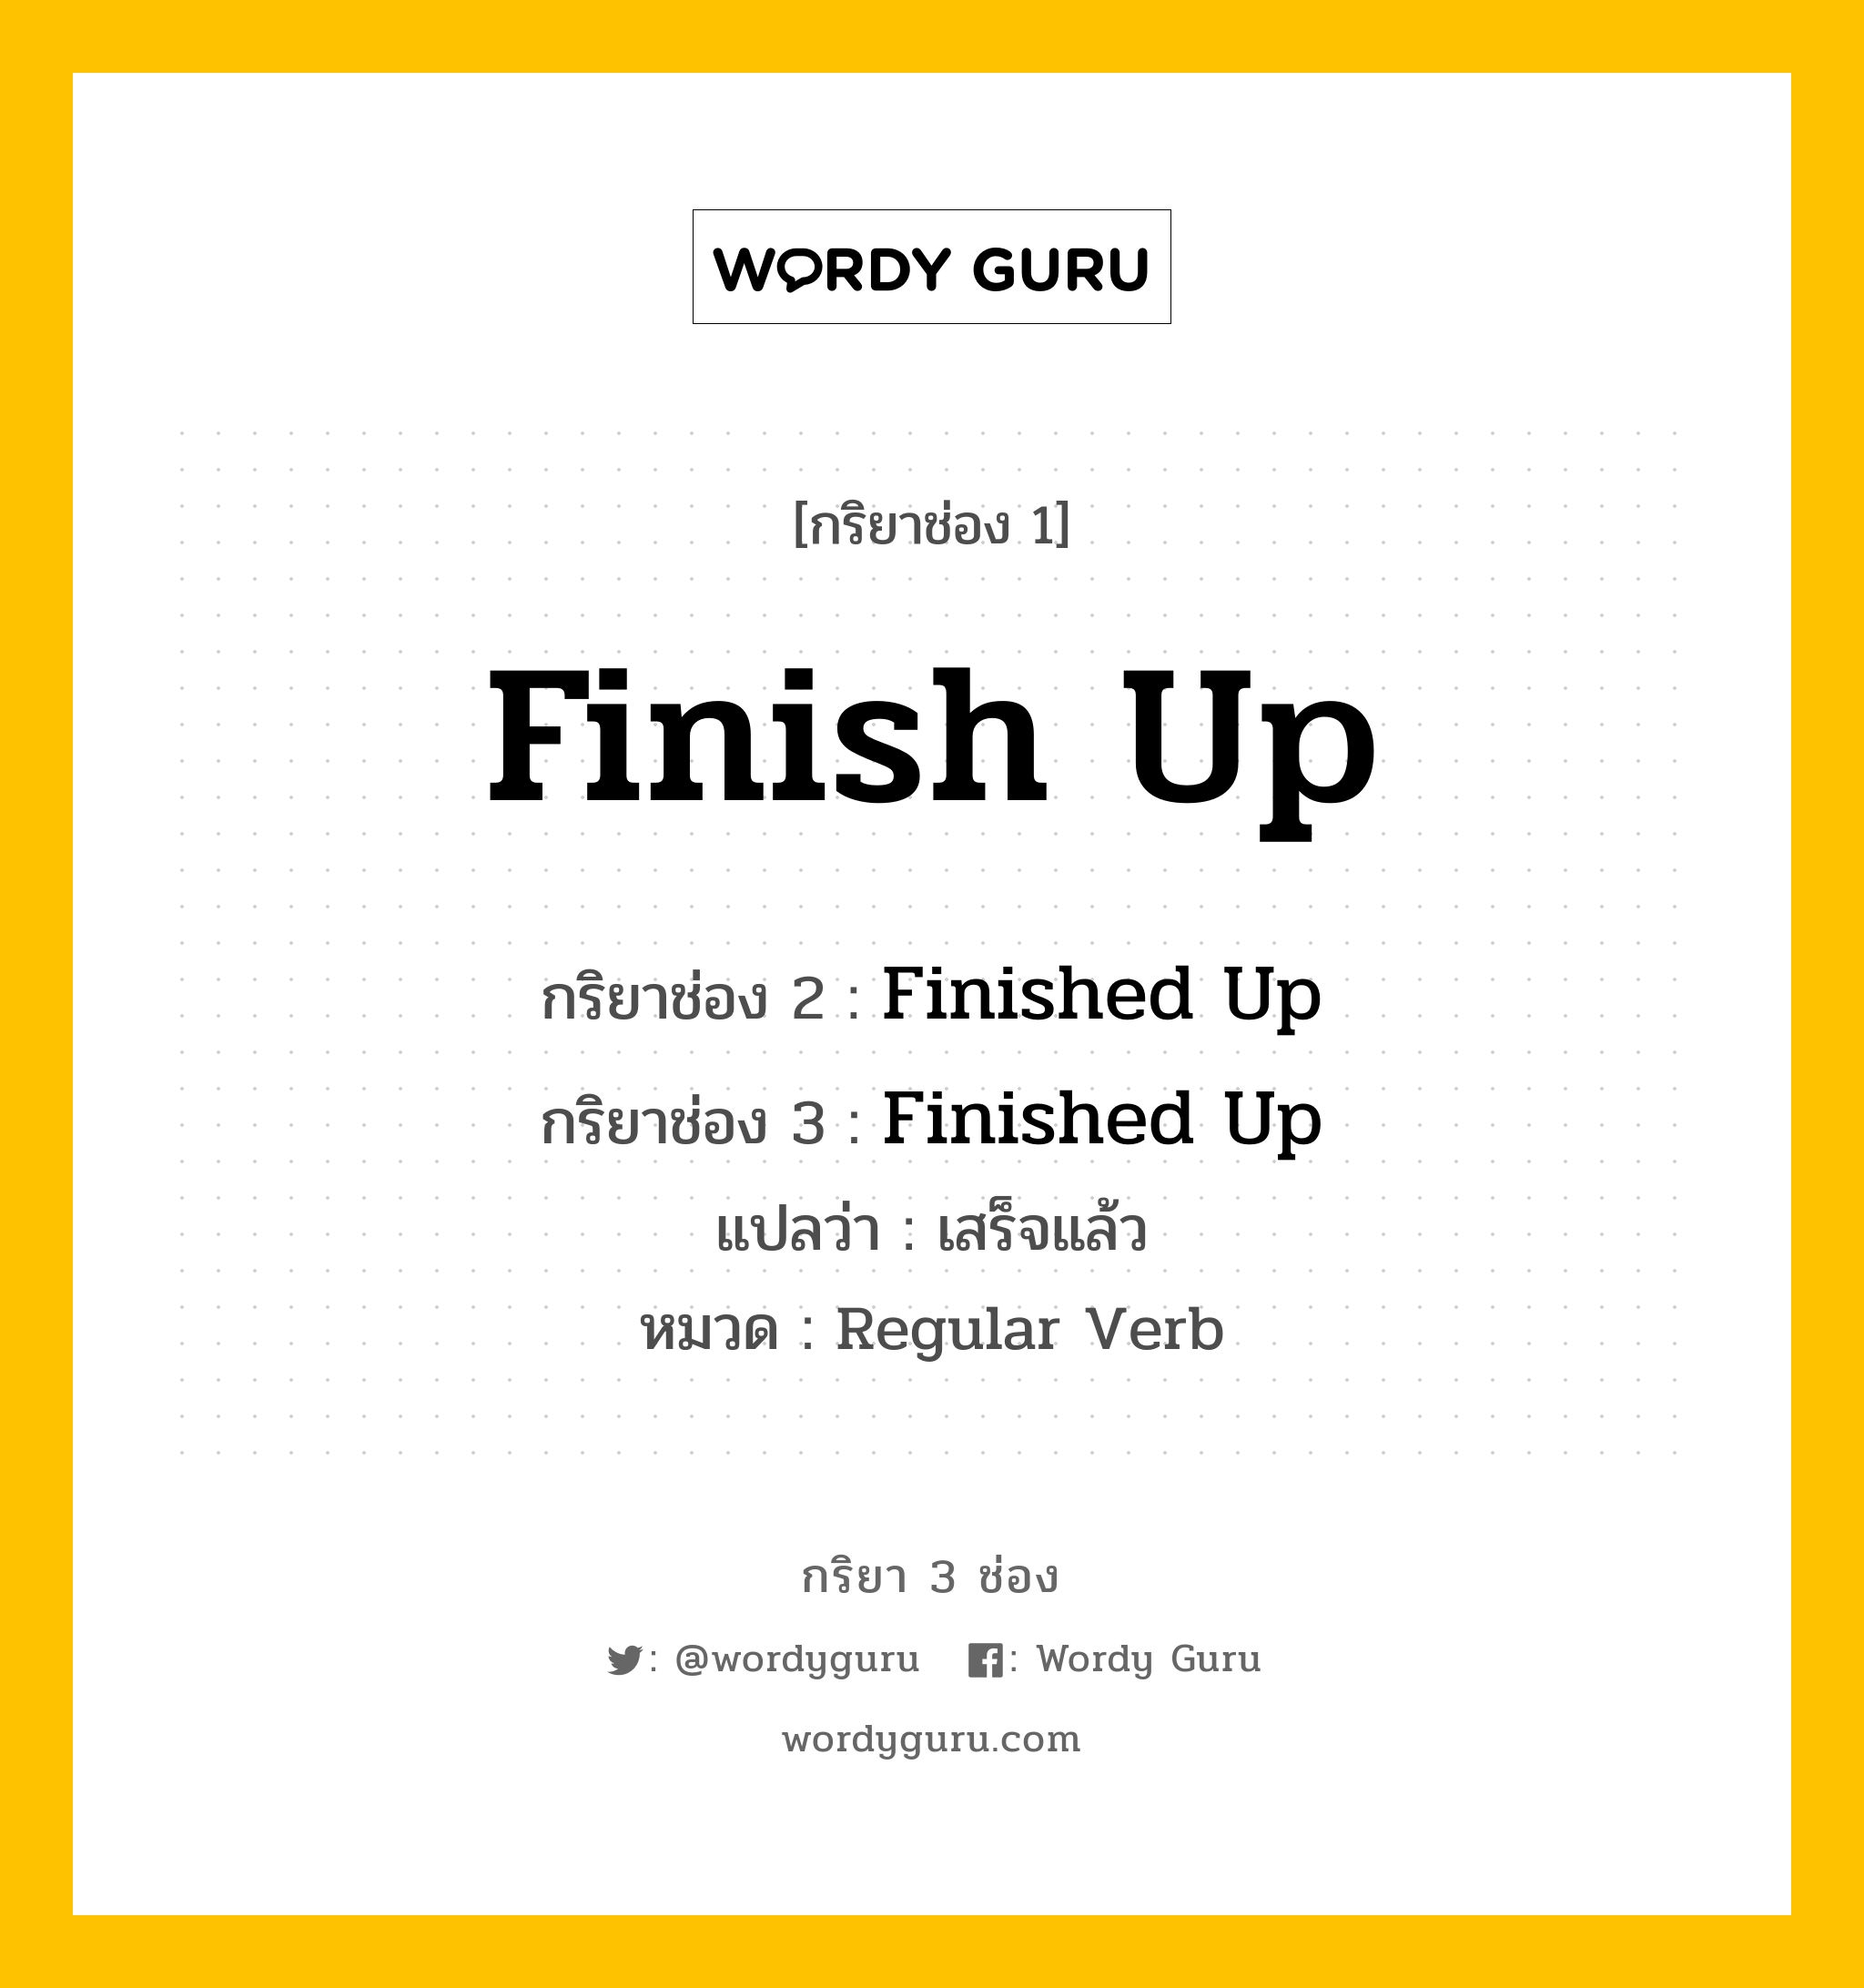 กริยา 3 ช่อง: Finish Up ช่อง 2 Finish Up ช่อง 3 คืออะไร, กริยาช่อง 1 Finish Up กริยาช่อง 2 Finished Up กริยาช่อง 3 Finished Up แปลว่า เสร็จแล้ว หมวด Regular Verb หมวด Regular Verb